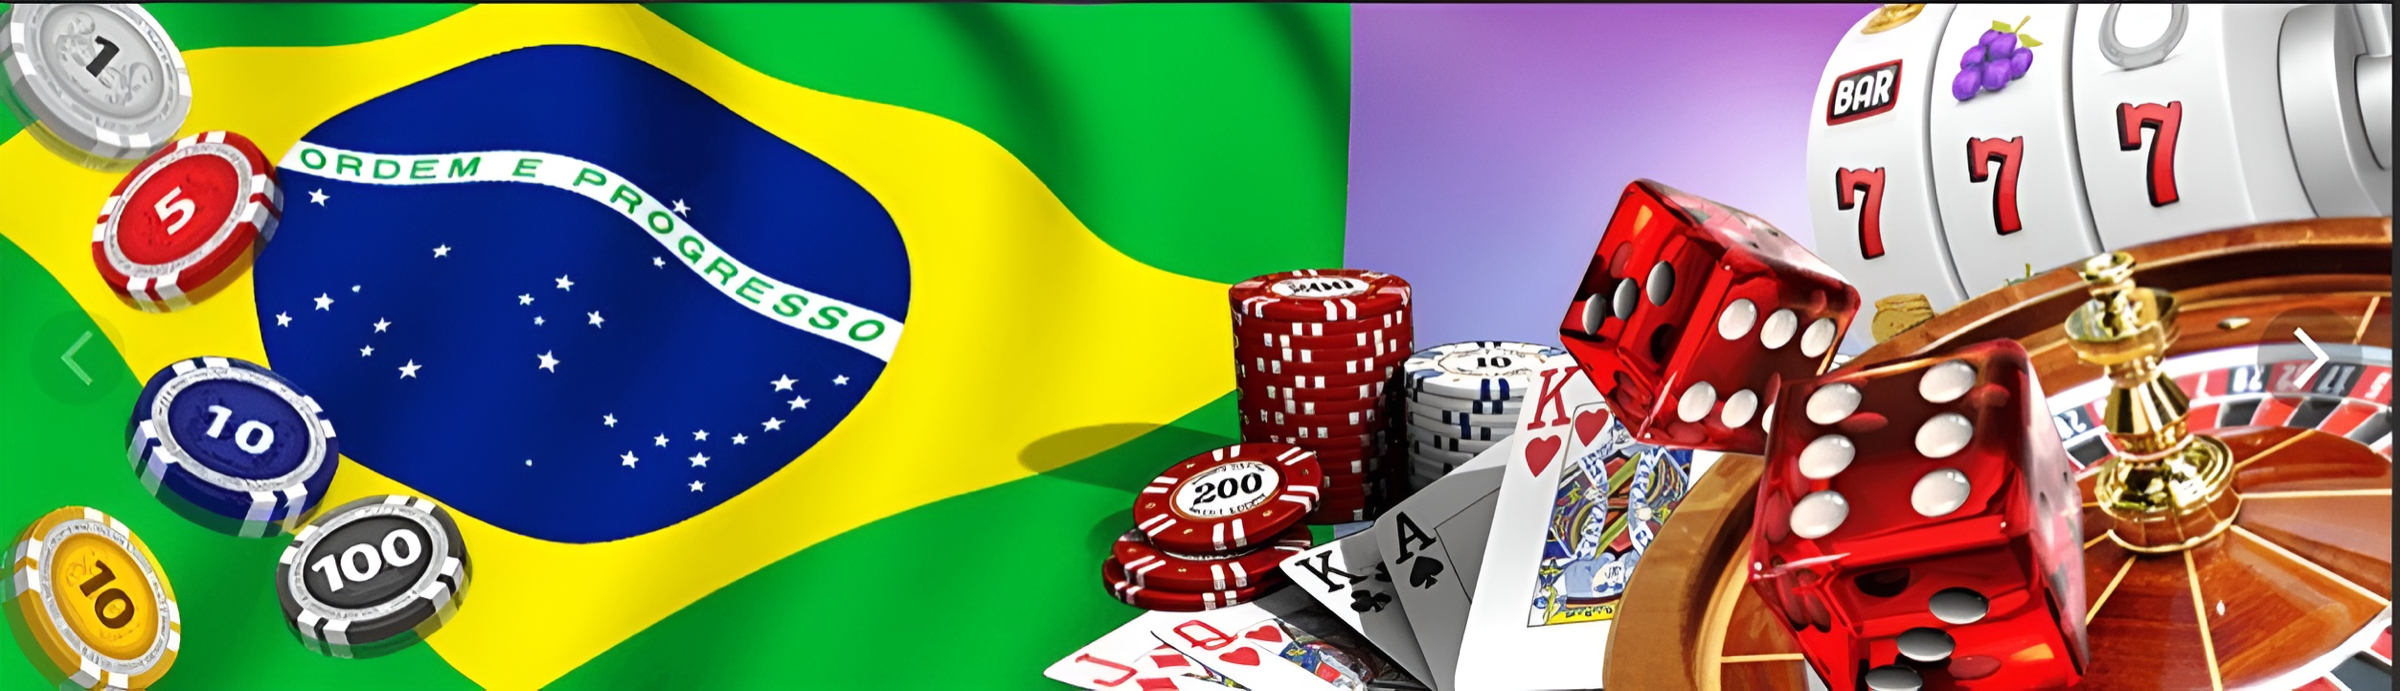 Jogos de cassino com RTP alto entre os mais populares do Brasil